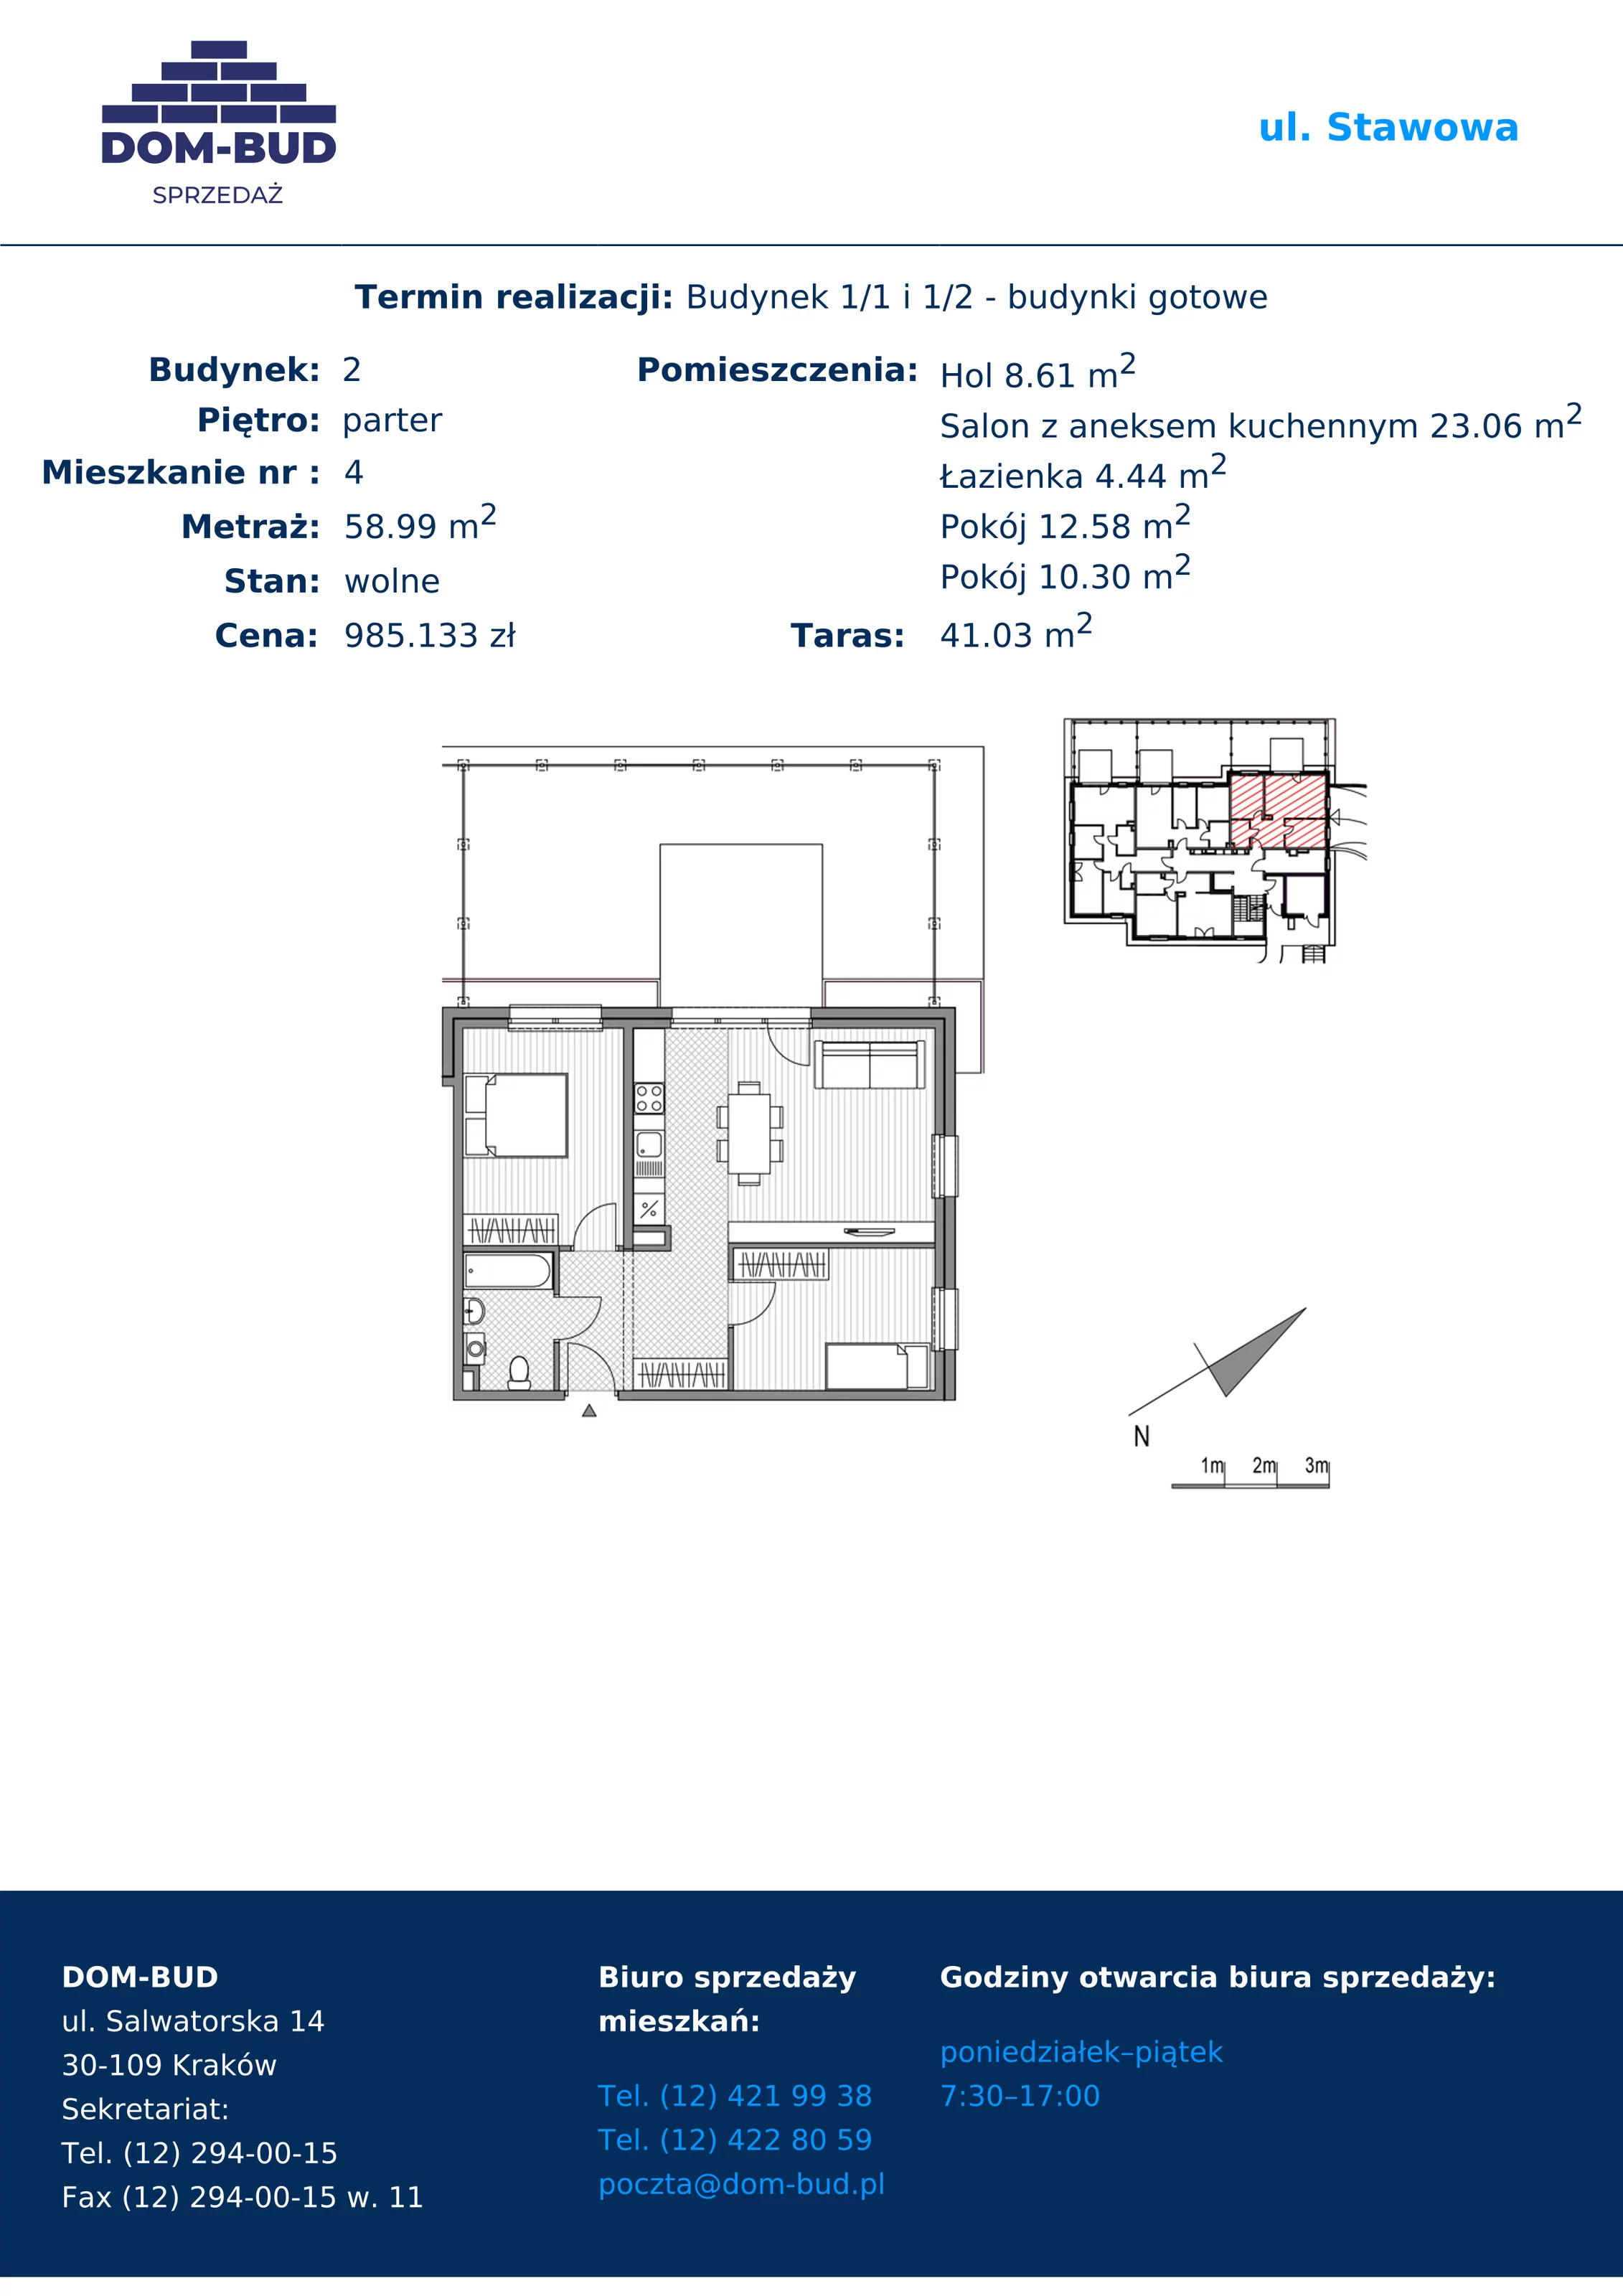 Mieszkanie 58,99 m², parter, oferta nr 1/2-4, ul. Stawowa, Kraków, Prądnik Biały, Bronowice Wielkie, ul. Stawowa 242